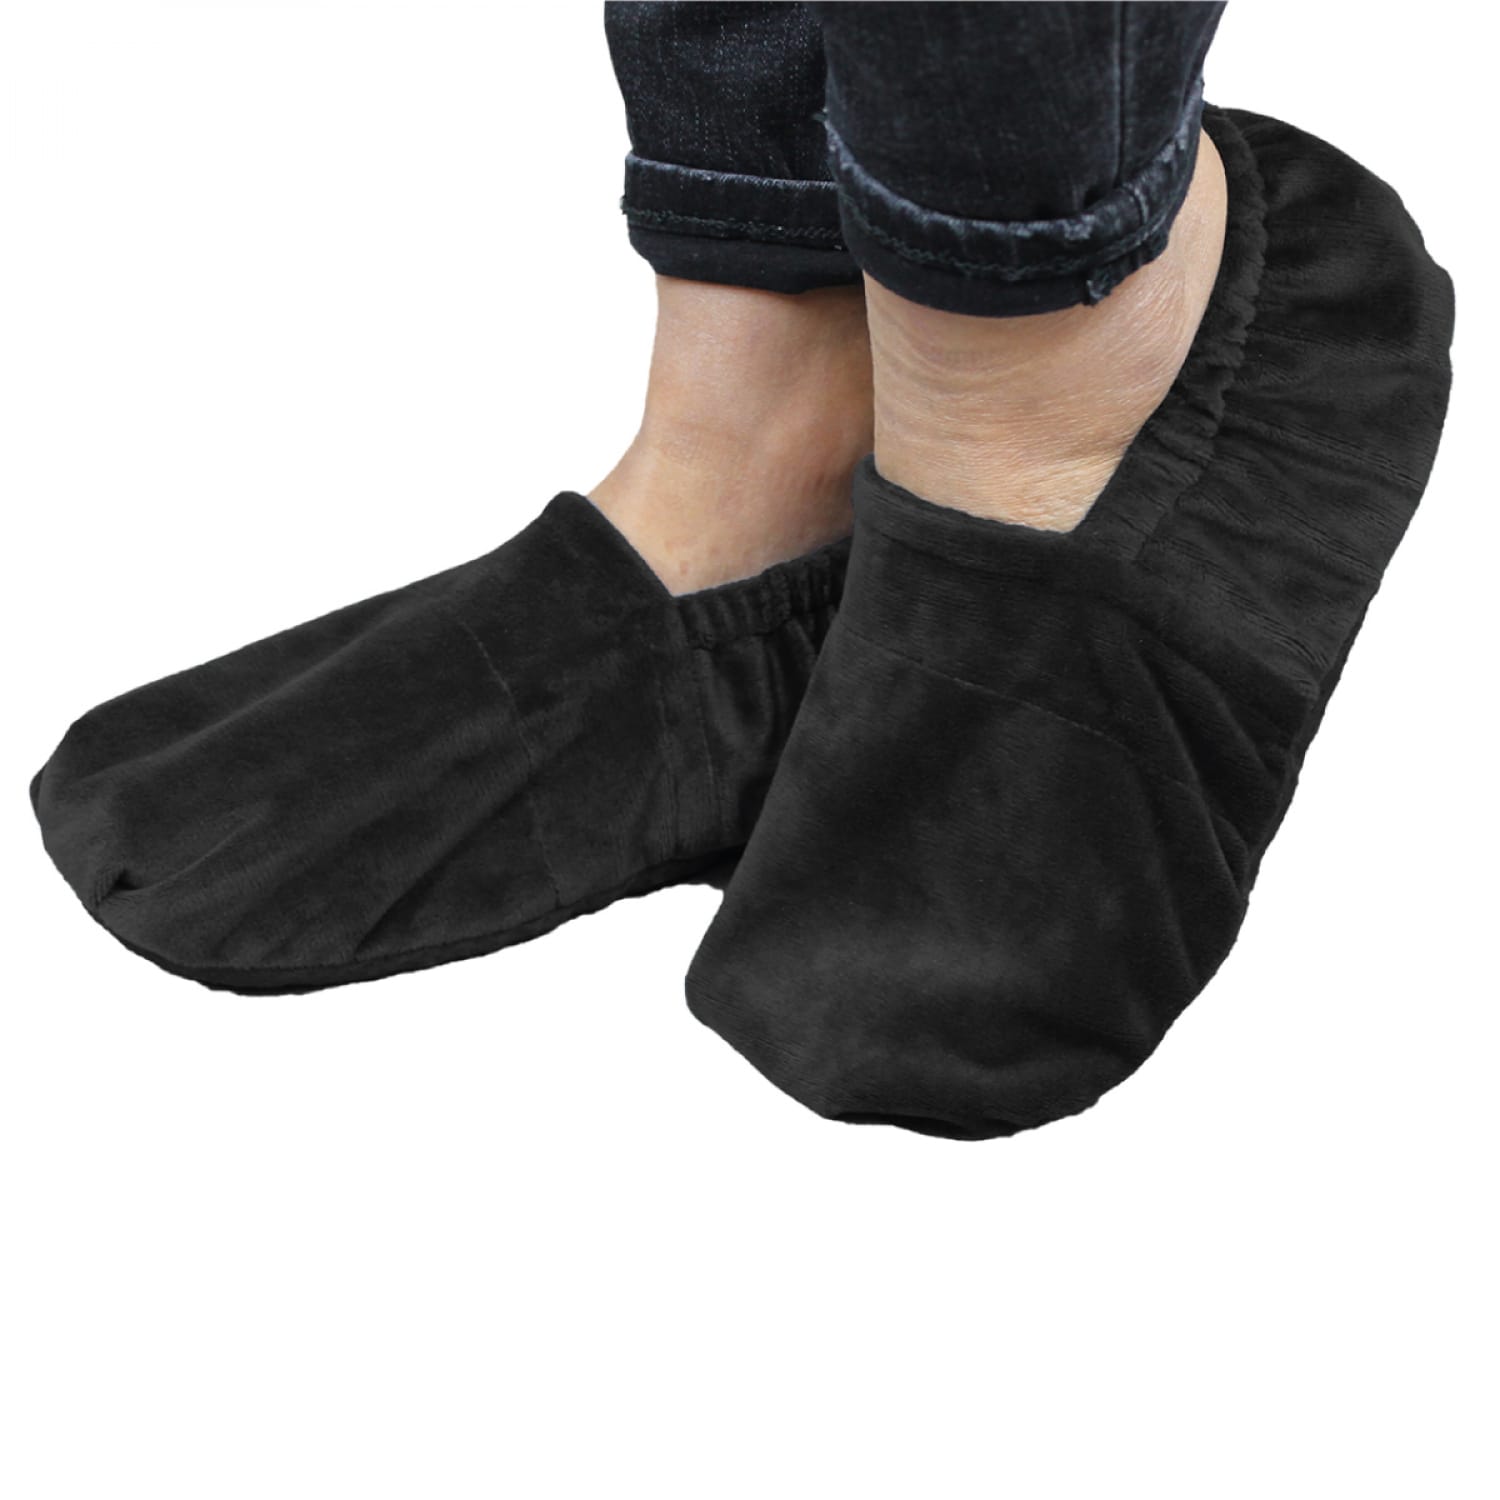 Des chaussons chauffants confortables – L'avant gardiste